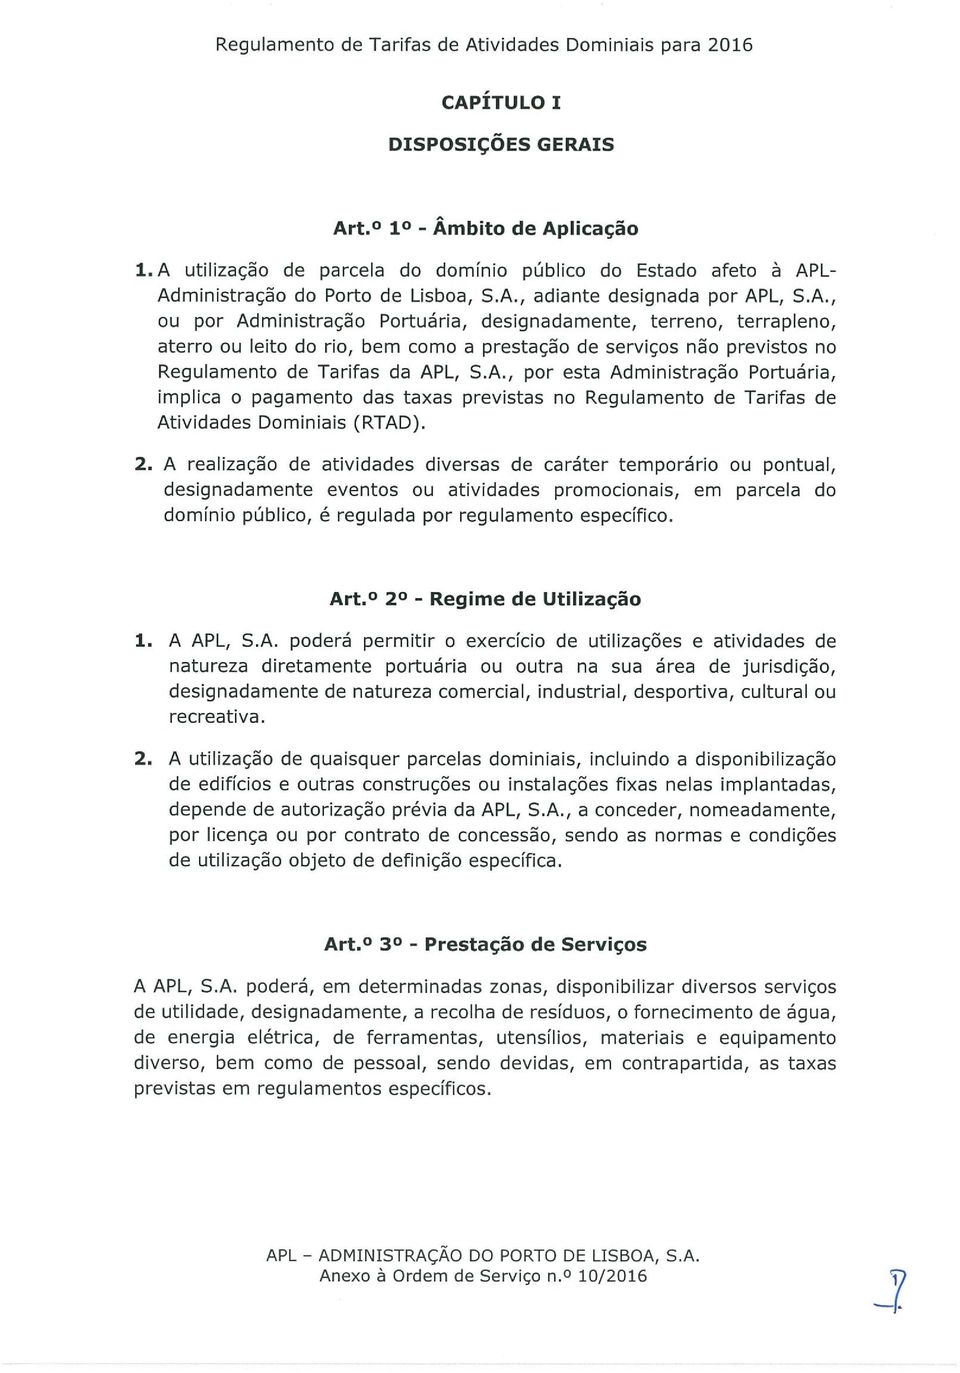 A., por esta Administração Portuária, implica o pagamento das taxas previstas no Regulamento de Tarifas de Atividades Dominiais (RTAD). 2.